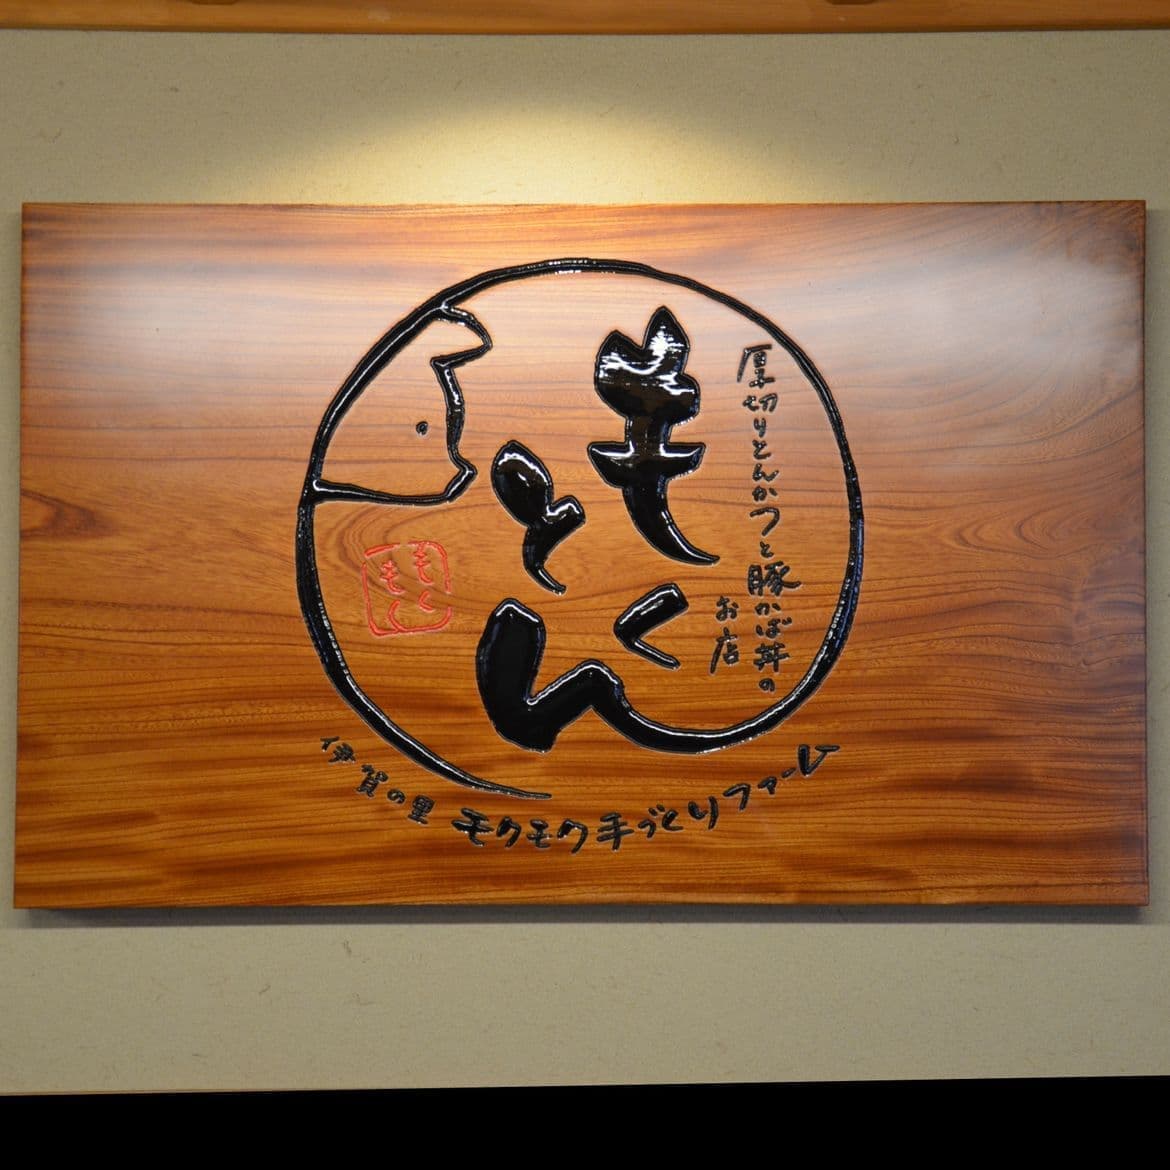 木目が特徴的なとんかつ店の彫刻木製看板